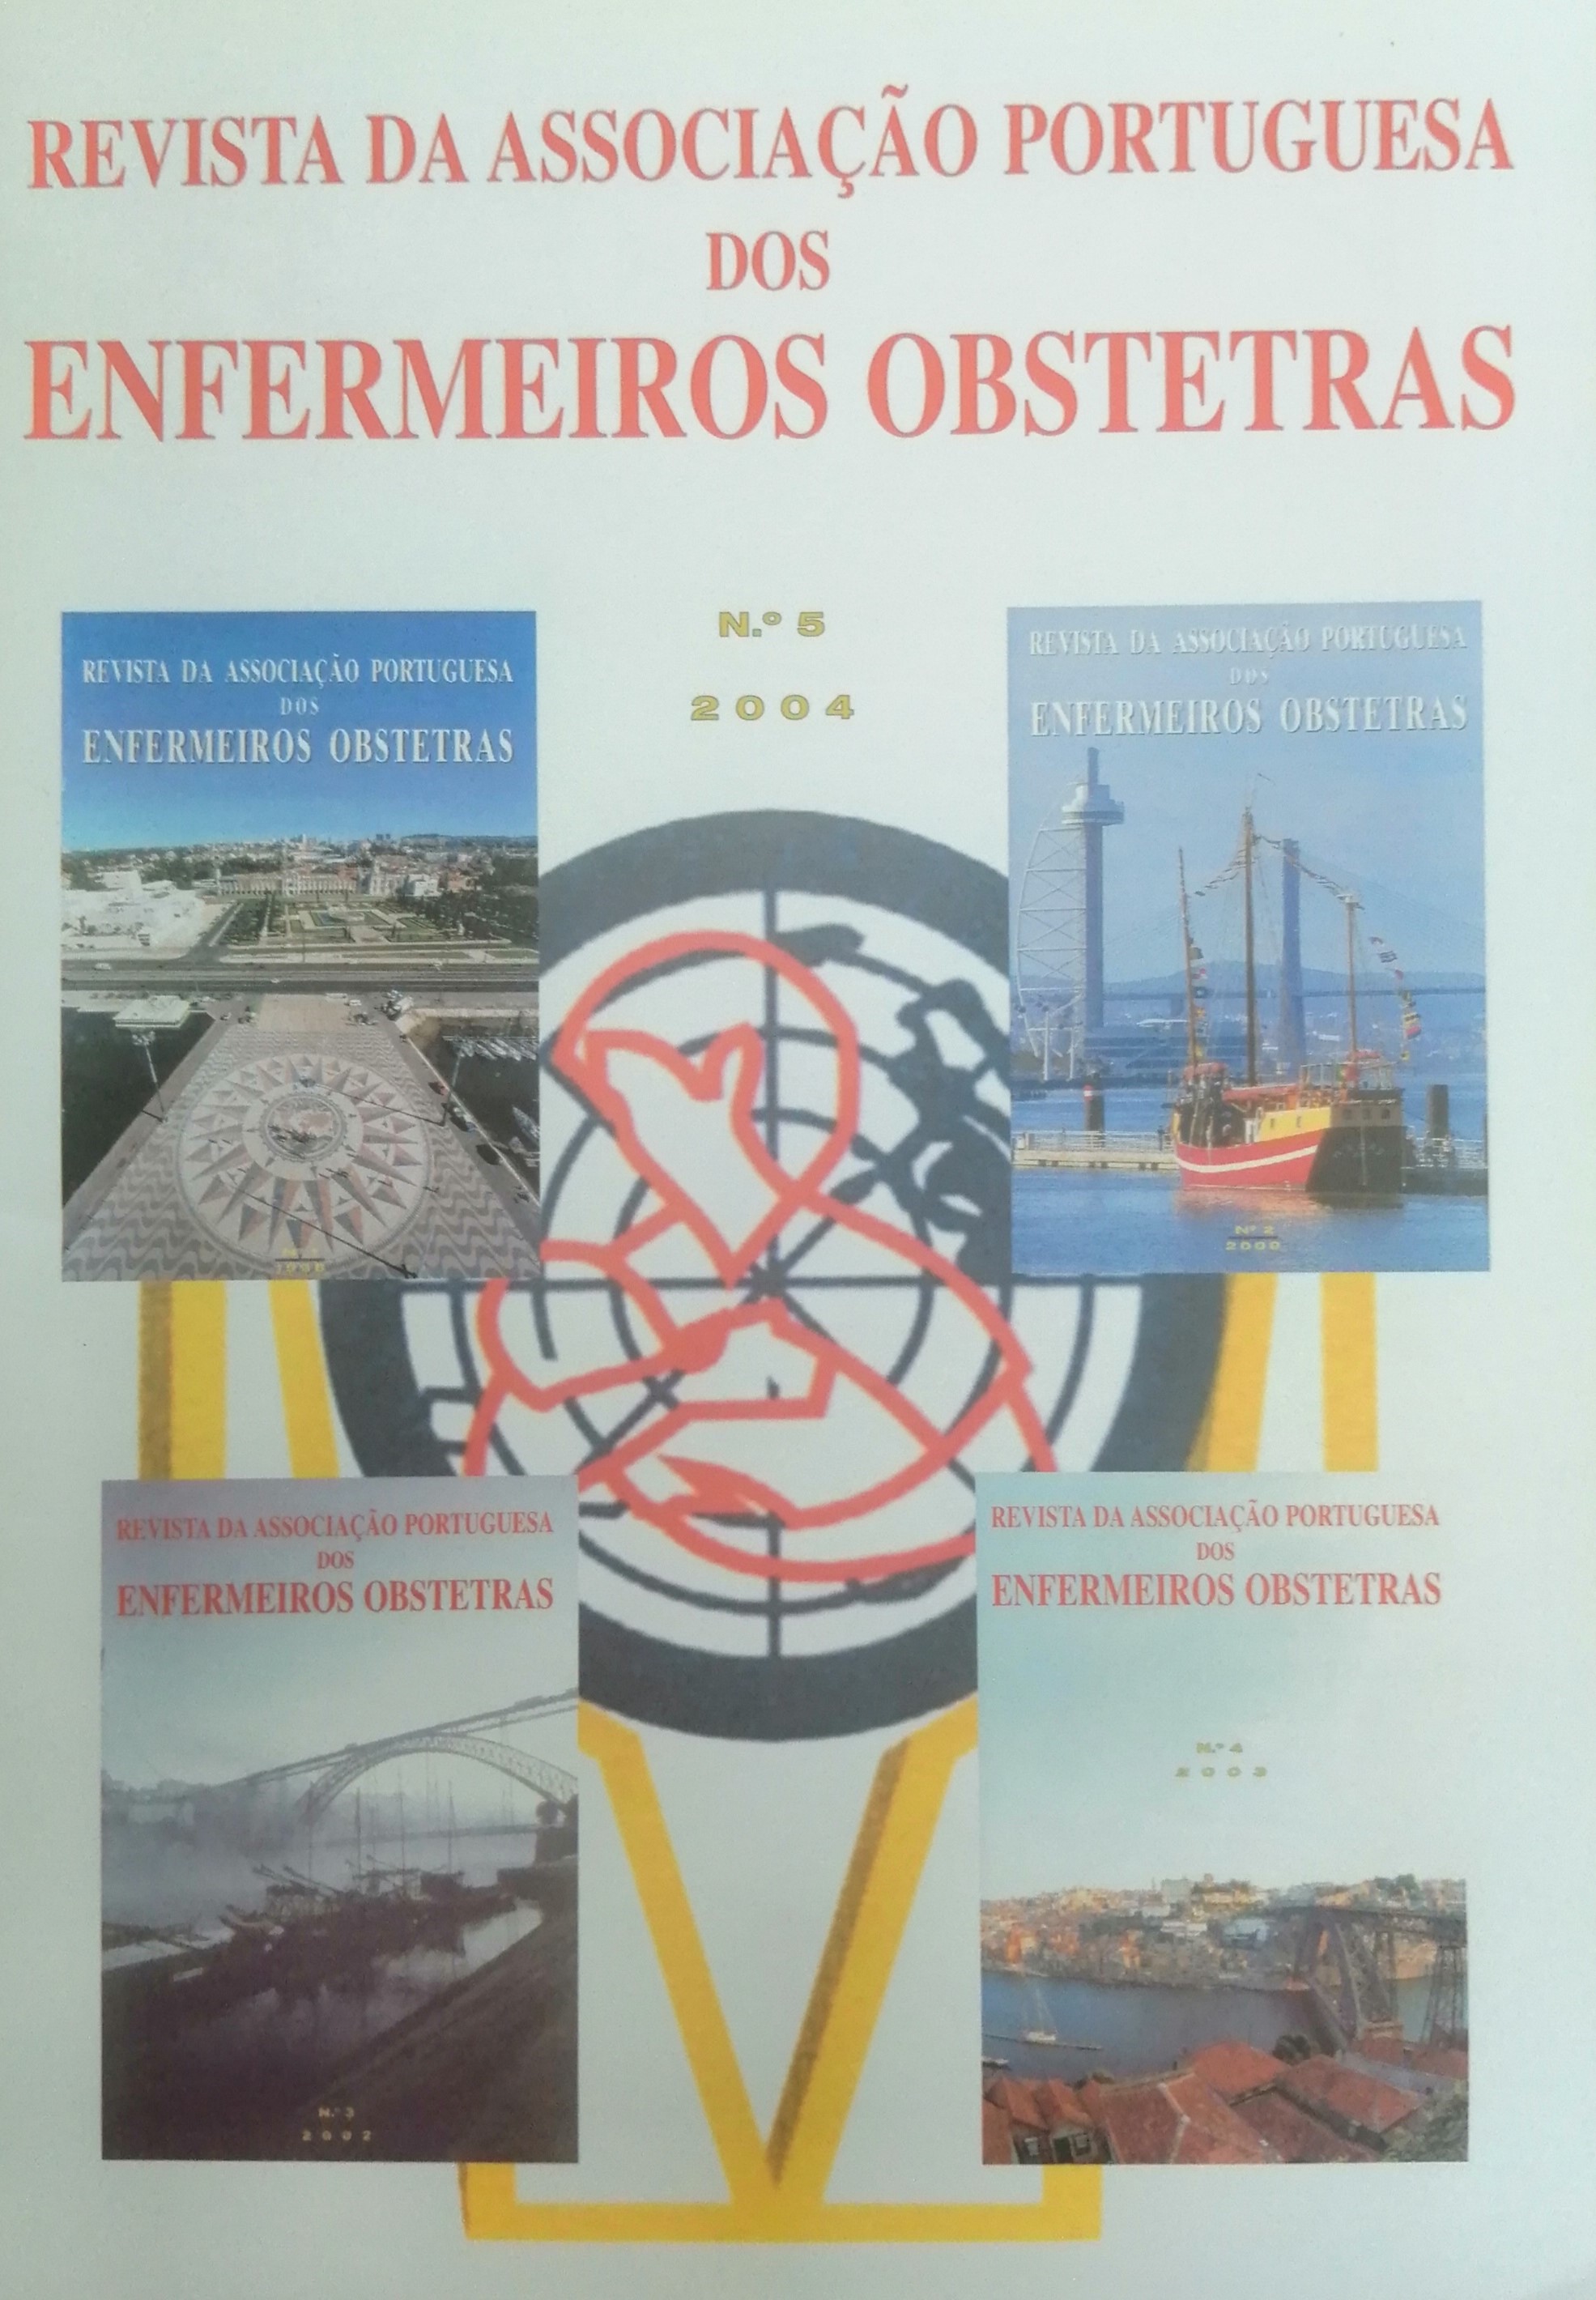 					Ver N.º 5 (2004): Revista da Associação Portuguesa de Enfermeiros Obstetras
				